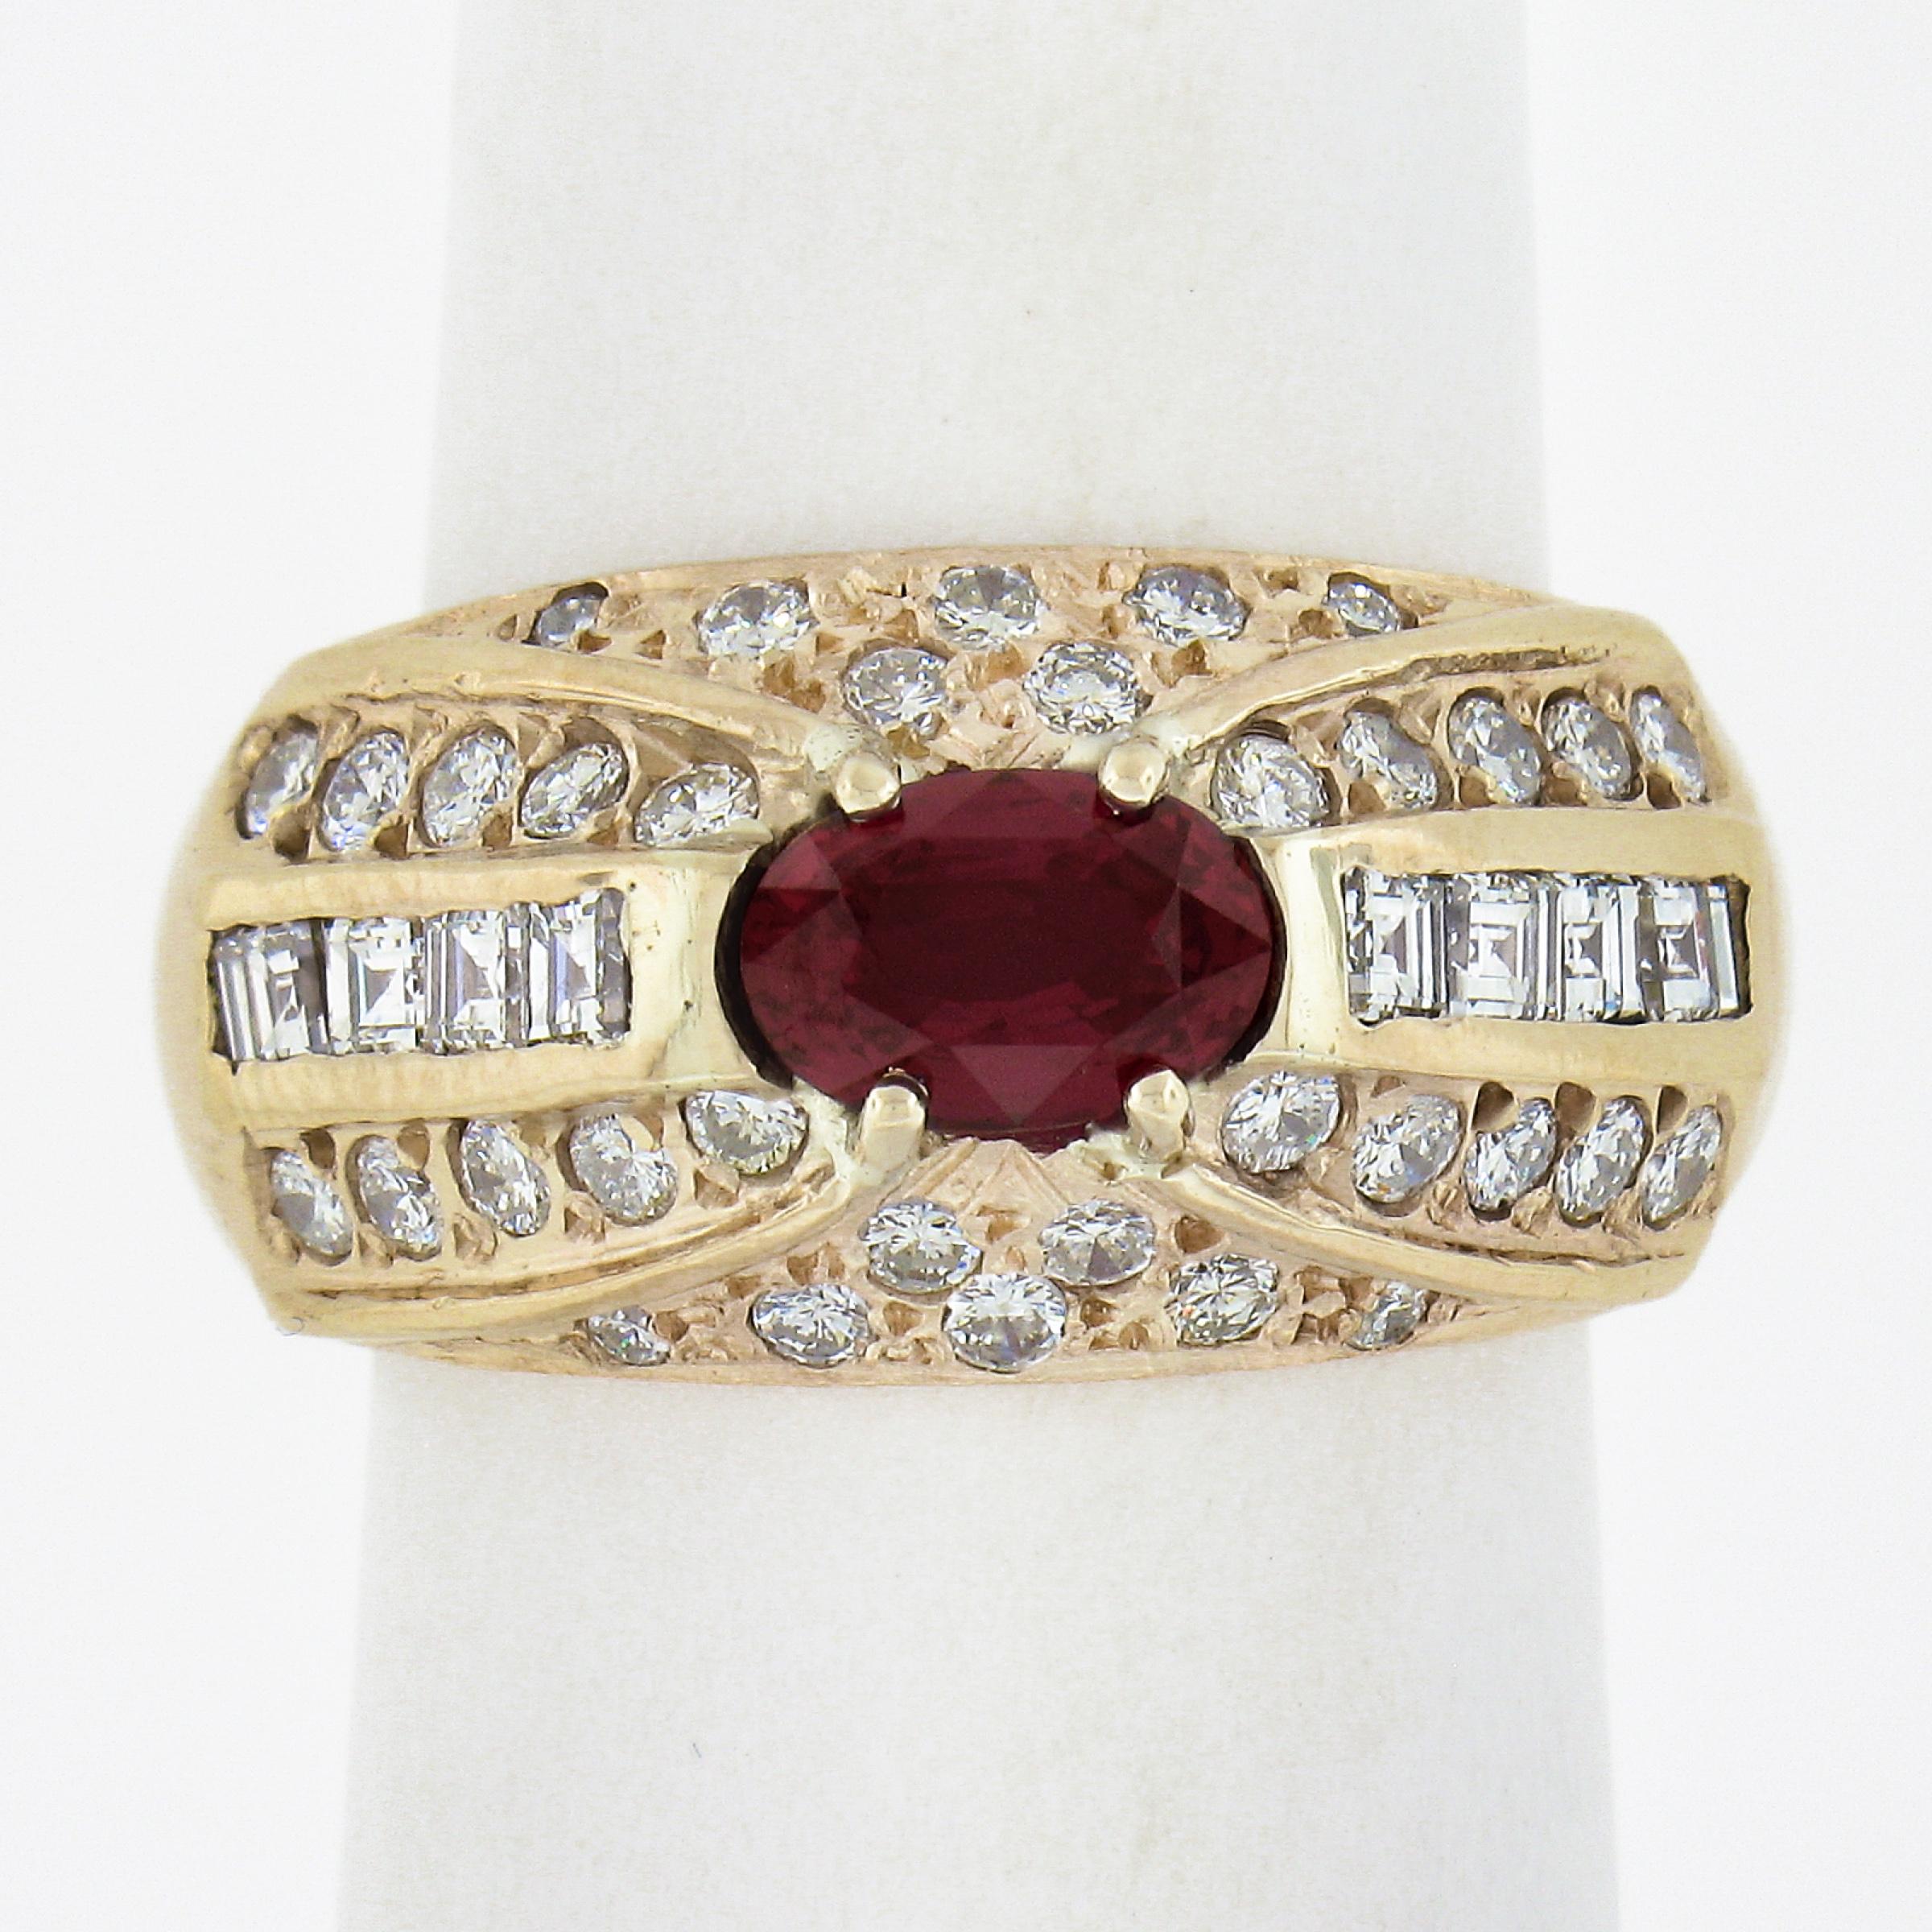 Sie sehen hier einen wunderschönen Ring mit Rubinen und Diamanten, der in Gelbgold veredelt und mit hochwertigen Edelsteinen besetzt ist. Der Mittelstein ist ein GIA-zertifizierter, aus Mosambik stammender, ovaler Rubin im Brillantschliff, der eine